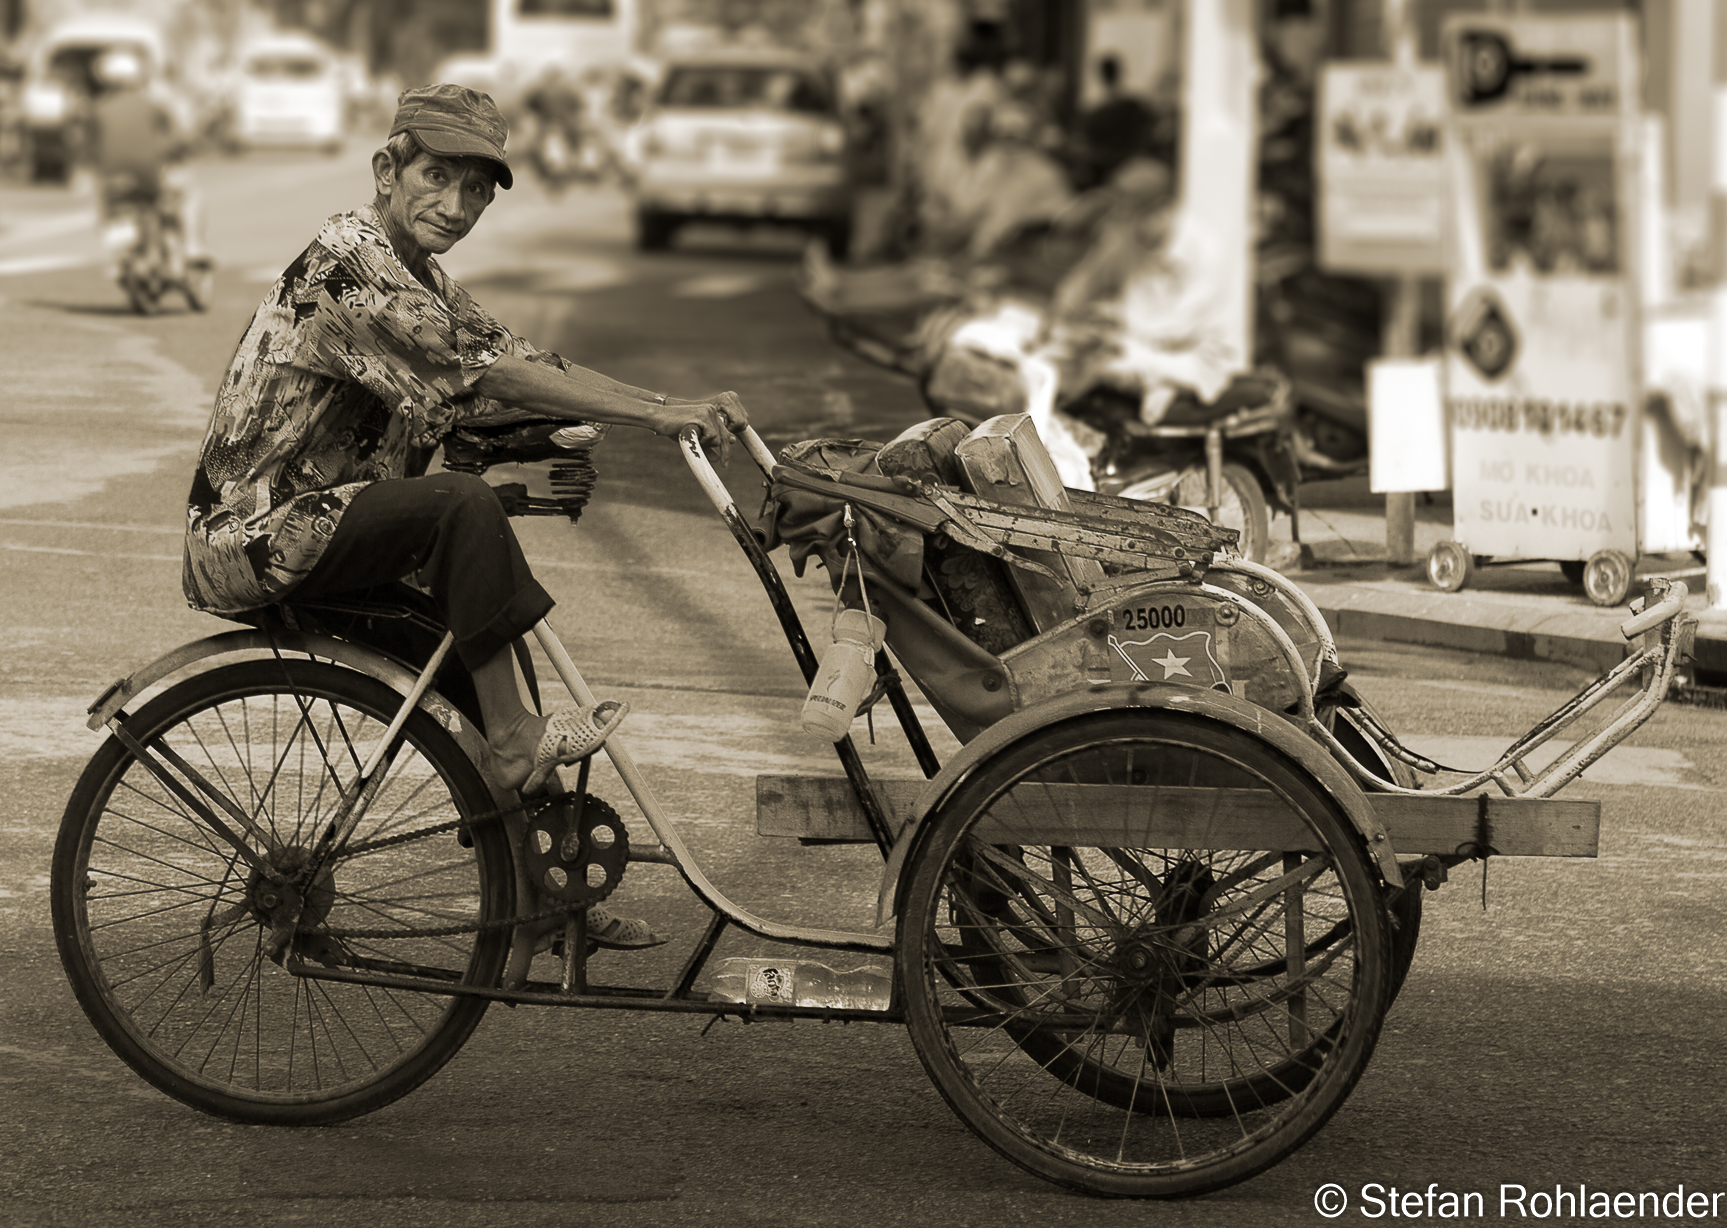 Cyclo Taxi in downtown Saigon